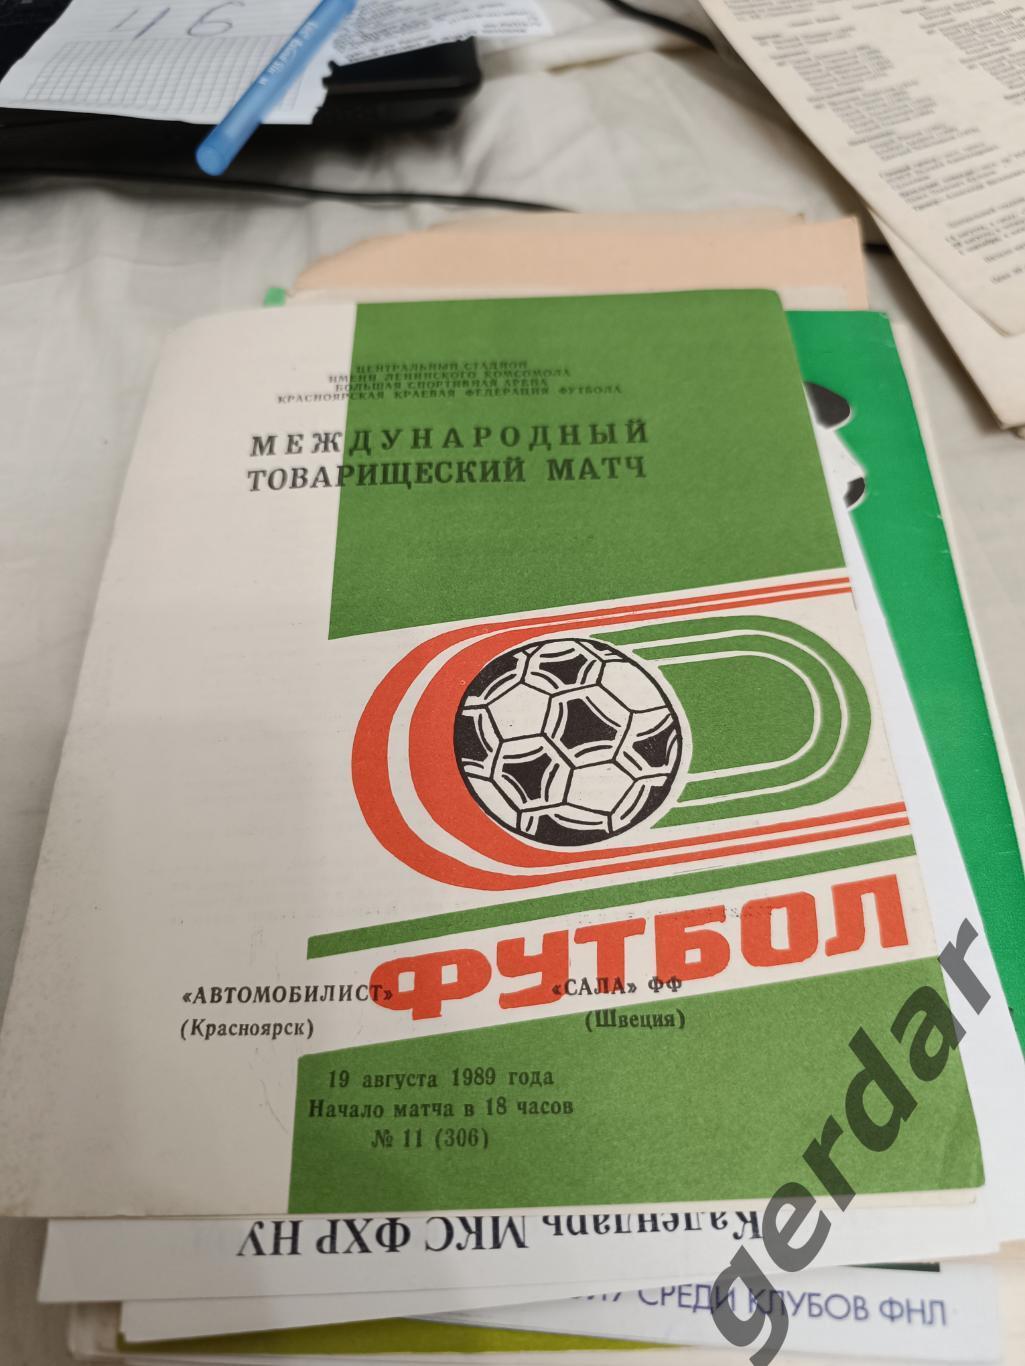 46 автомобилист Красноярск сала Швеция 1989 мтм